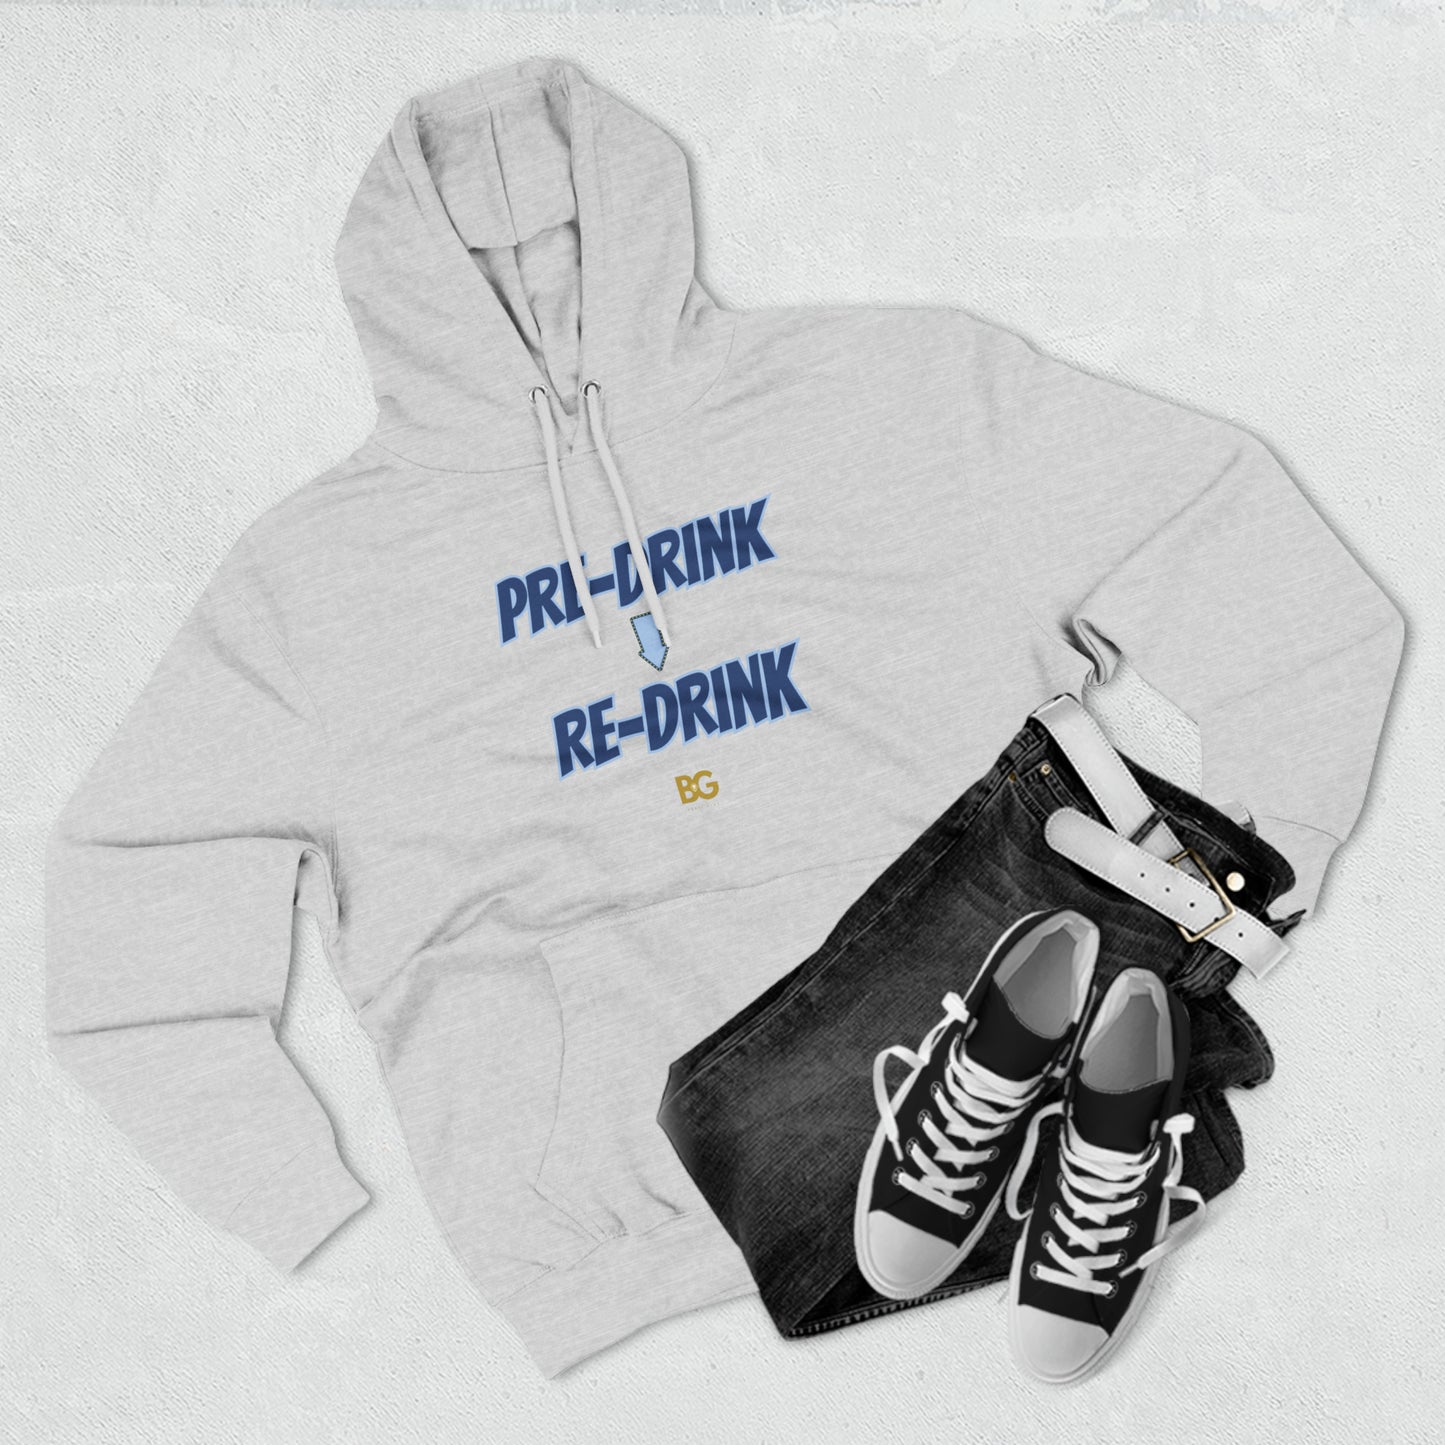 BG "Pre-drink ➡️ Re-drink" Premium Pullover Hoodie